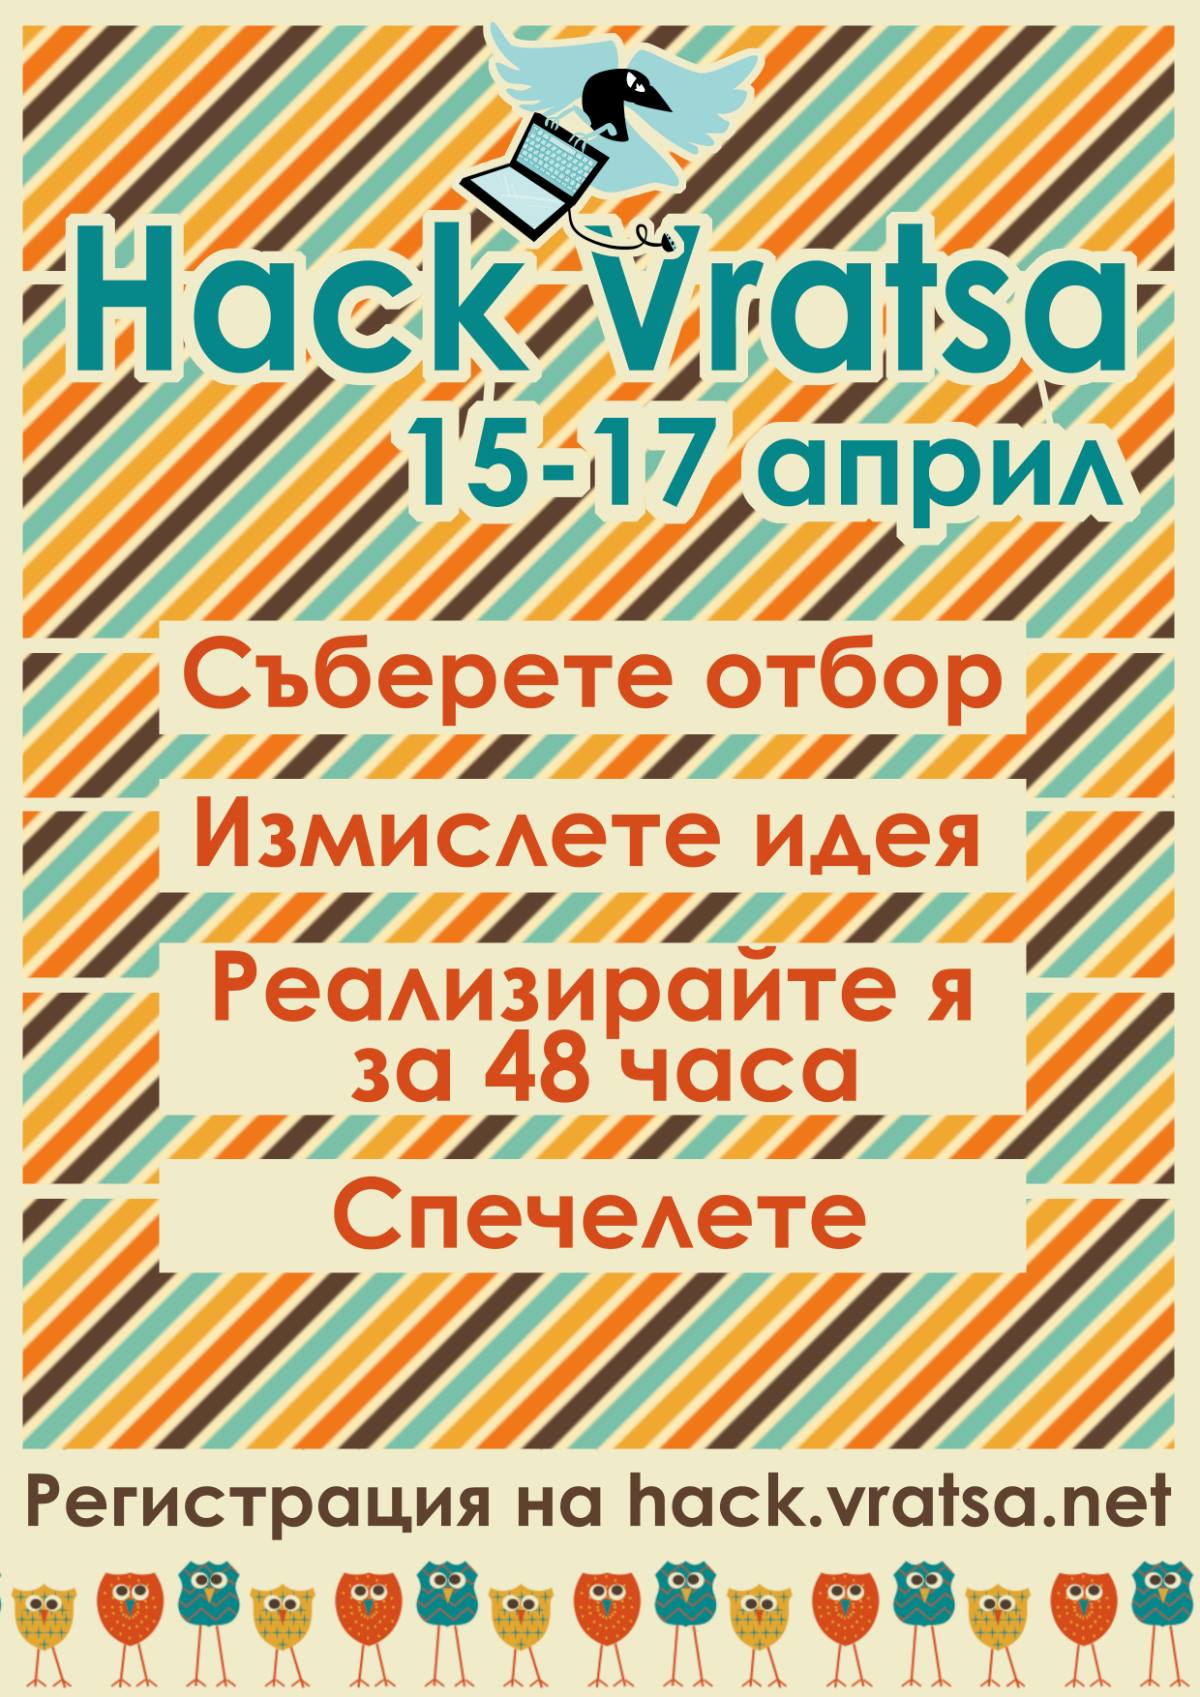 HackVratsa – хакатон във Враца